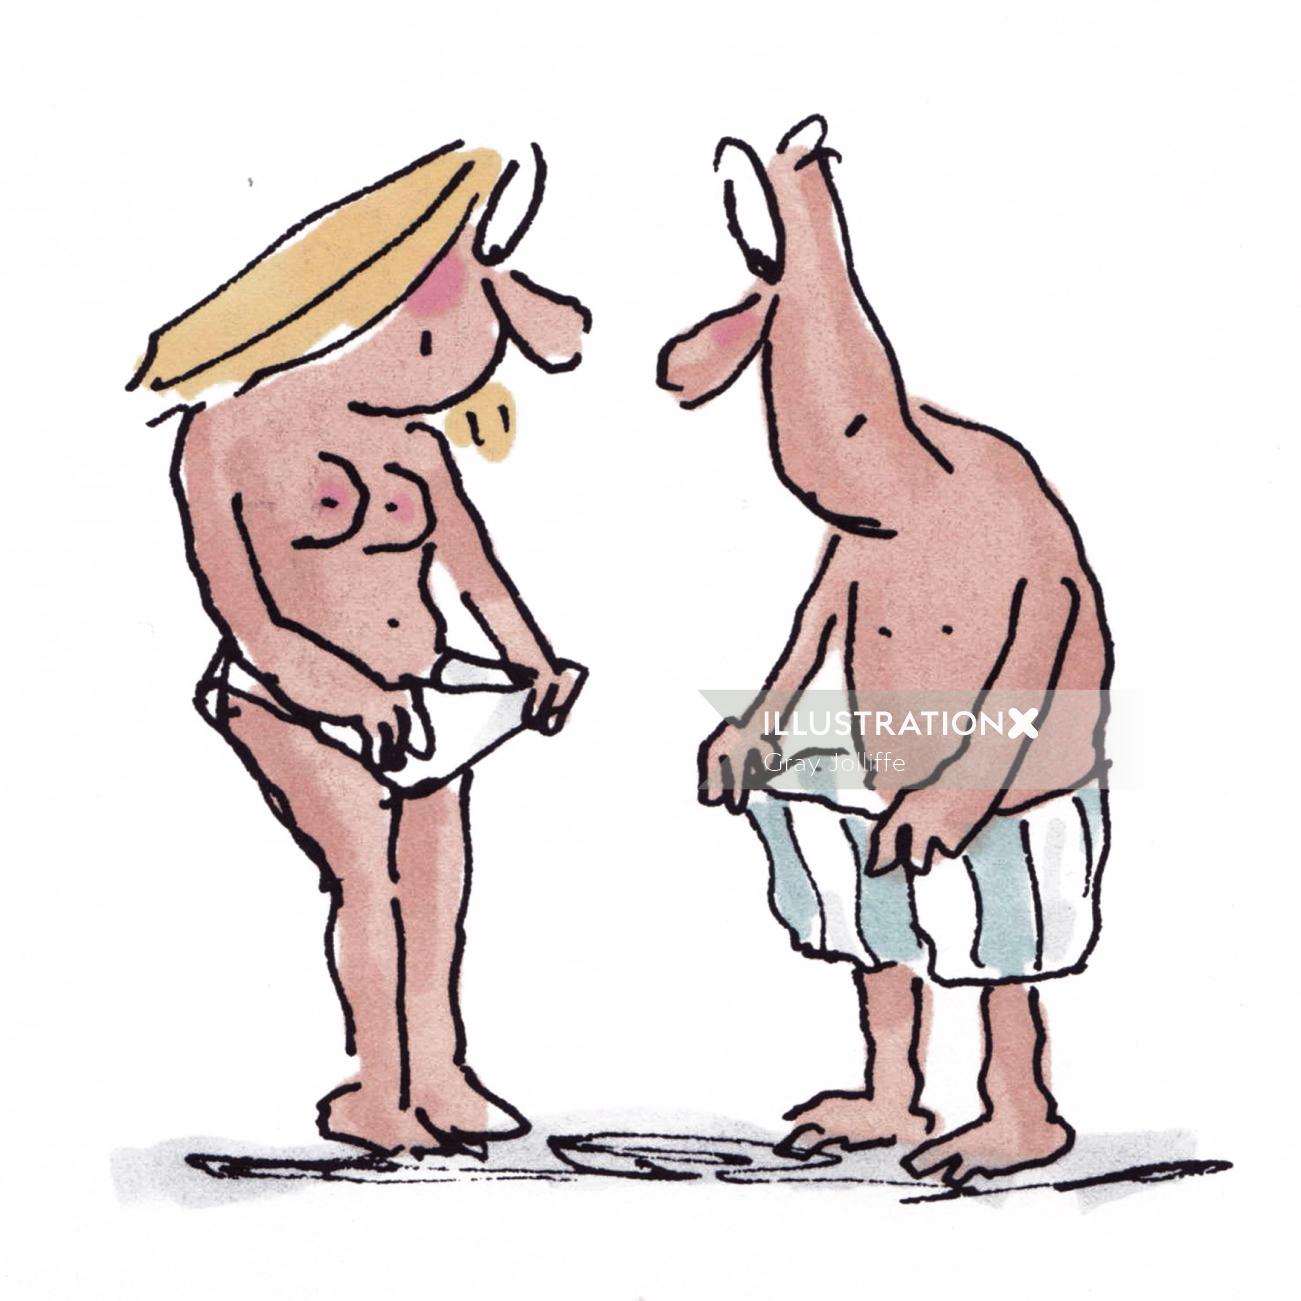 下着を探しているカップル-グレイ・ジョリフによる漫画イラスト